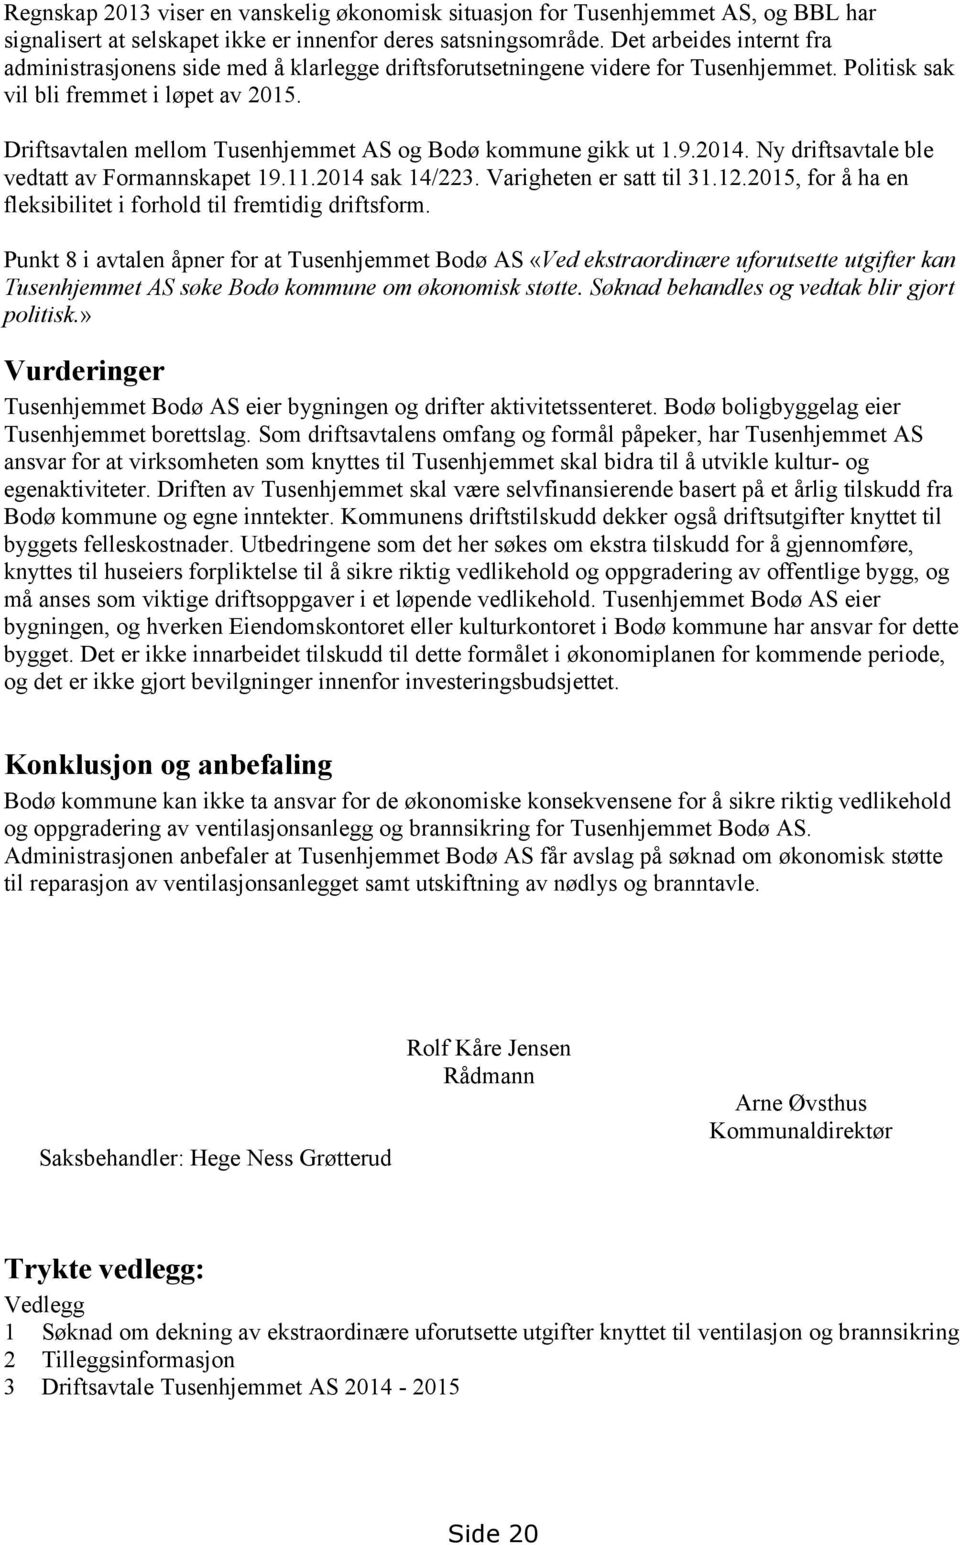 Driftsavtalen mellom Tusenhjemmet AS og Bodø kommune gikk ut 1.9.2014. Ny driftsavtale ble vedtatt av Formannskapet 19.11.2014 sak 14/223. Varigheten er satt til 31.12.